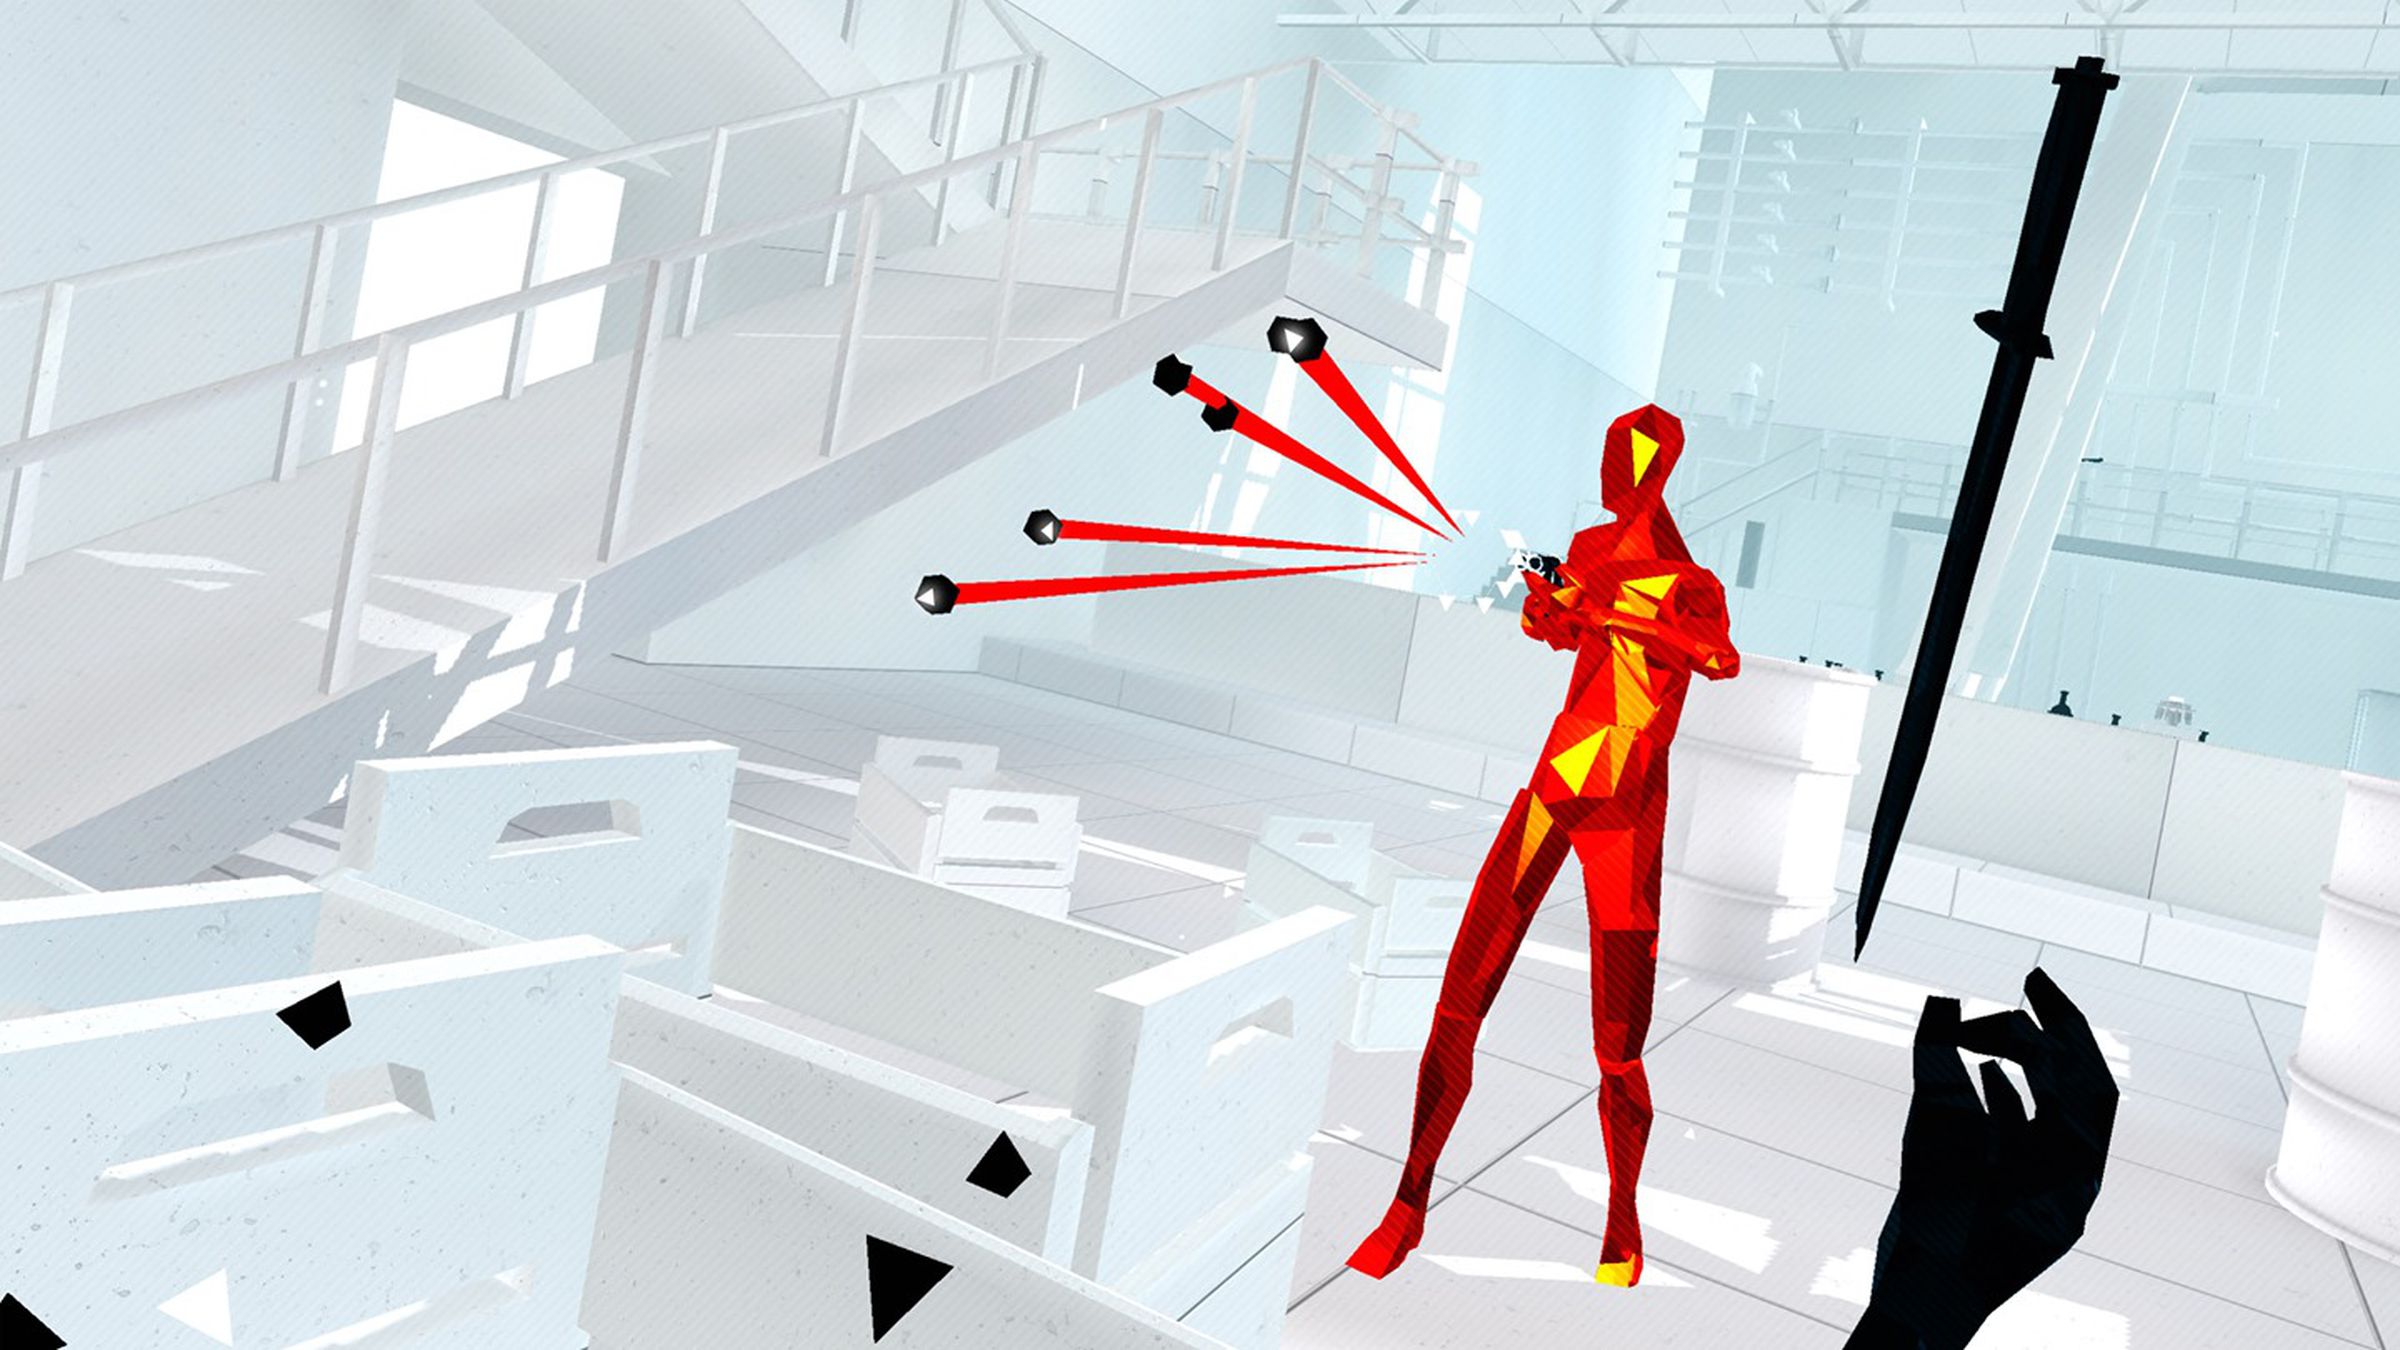 La figura humana en rojo y amarillo emite rayos rojos y negros mientras una mano alcanza una espada negra dentro de un fondo de oficina.